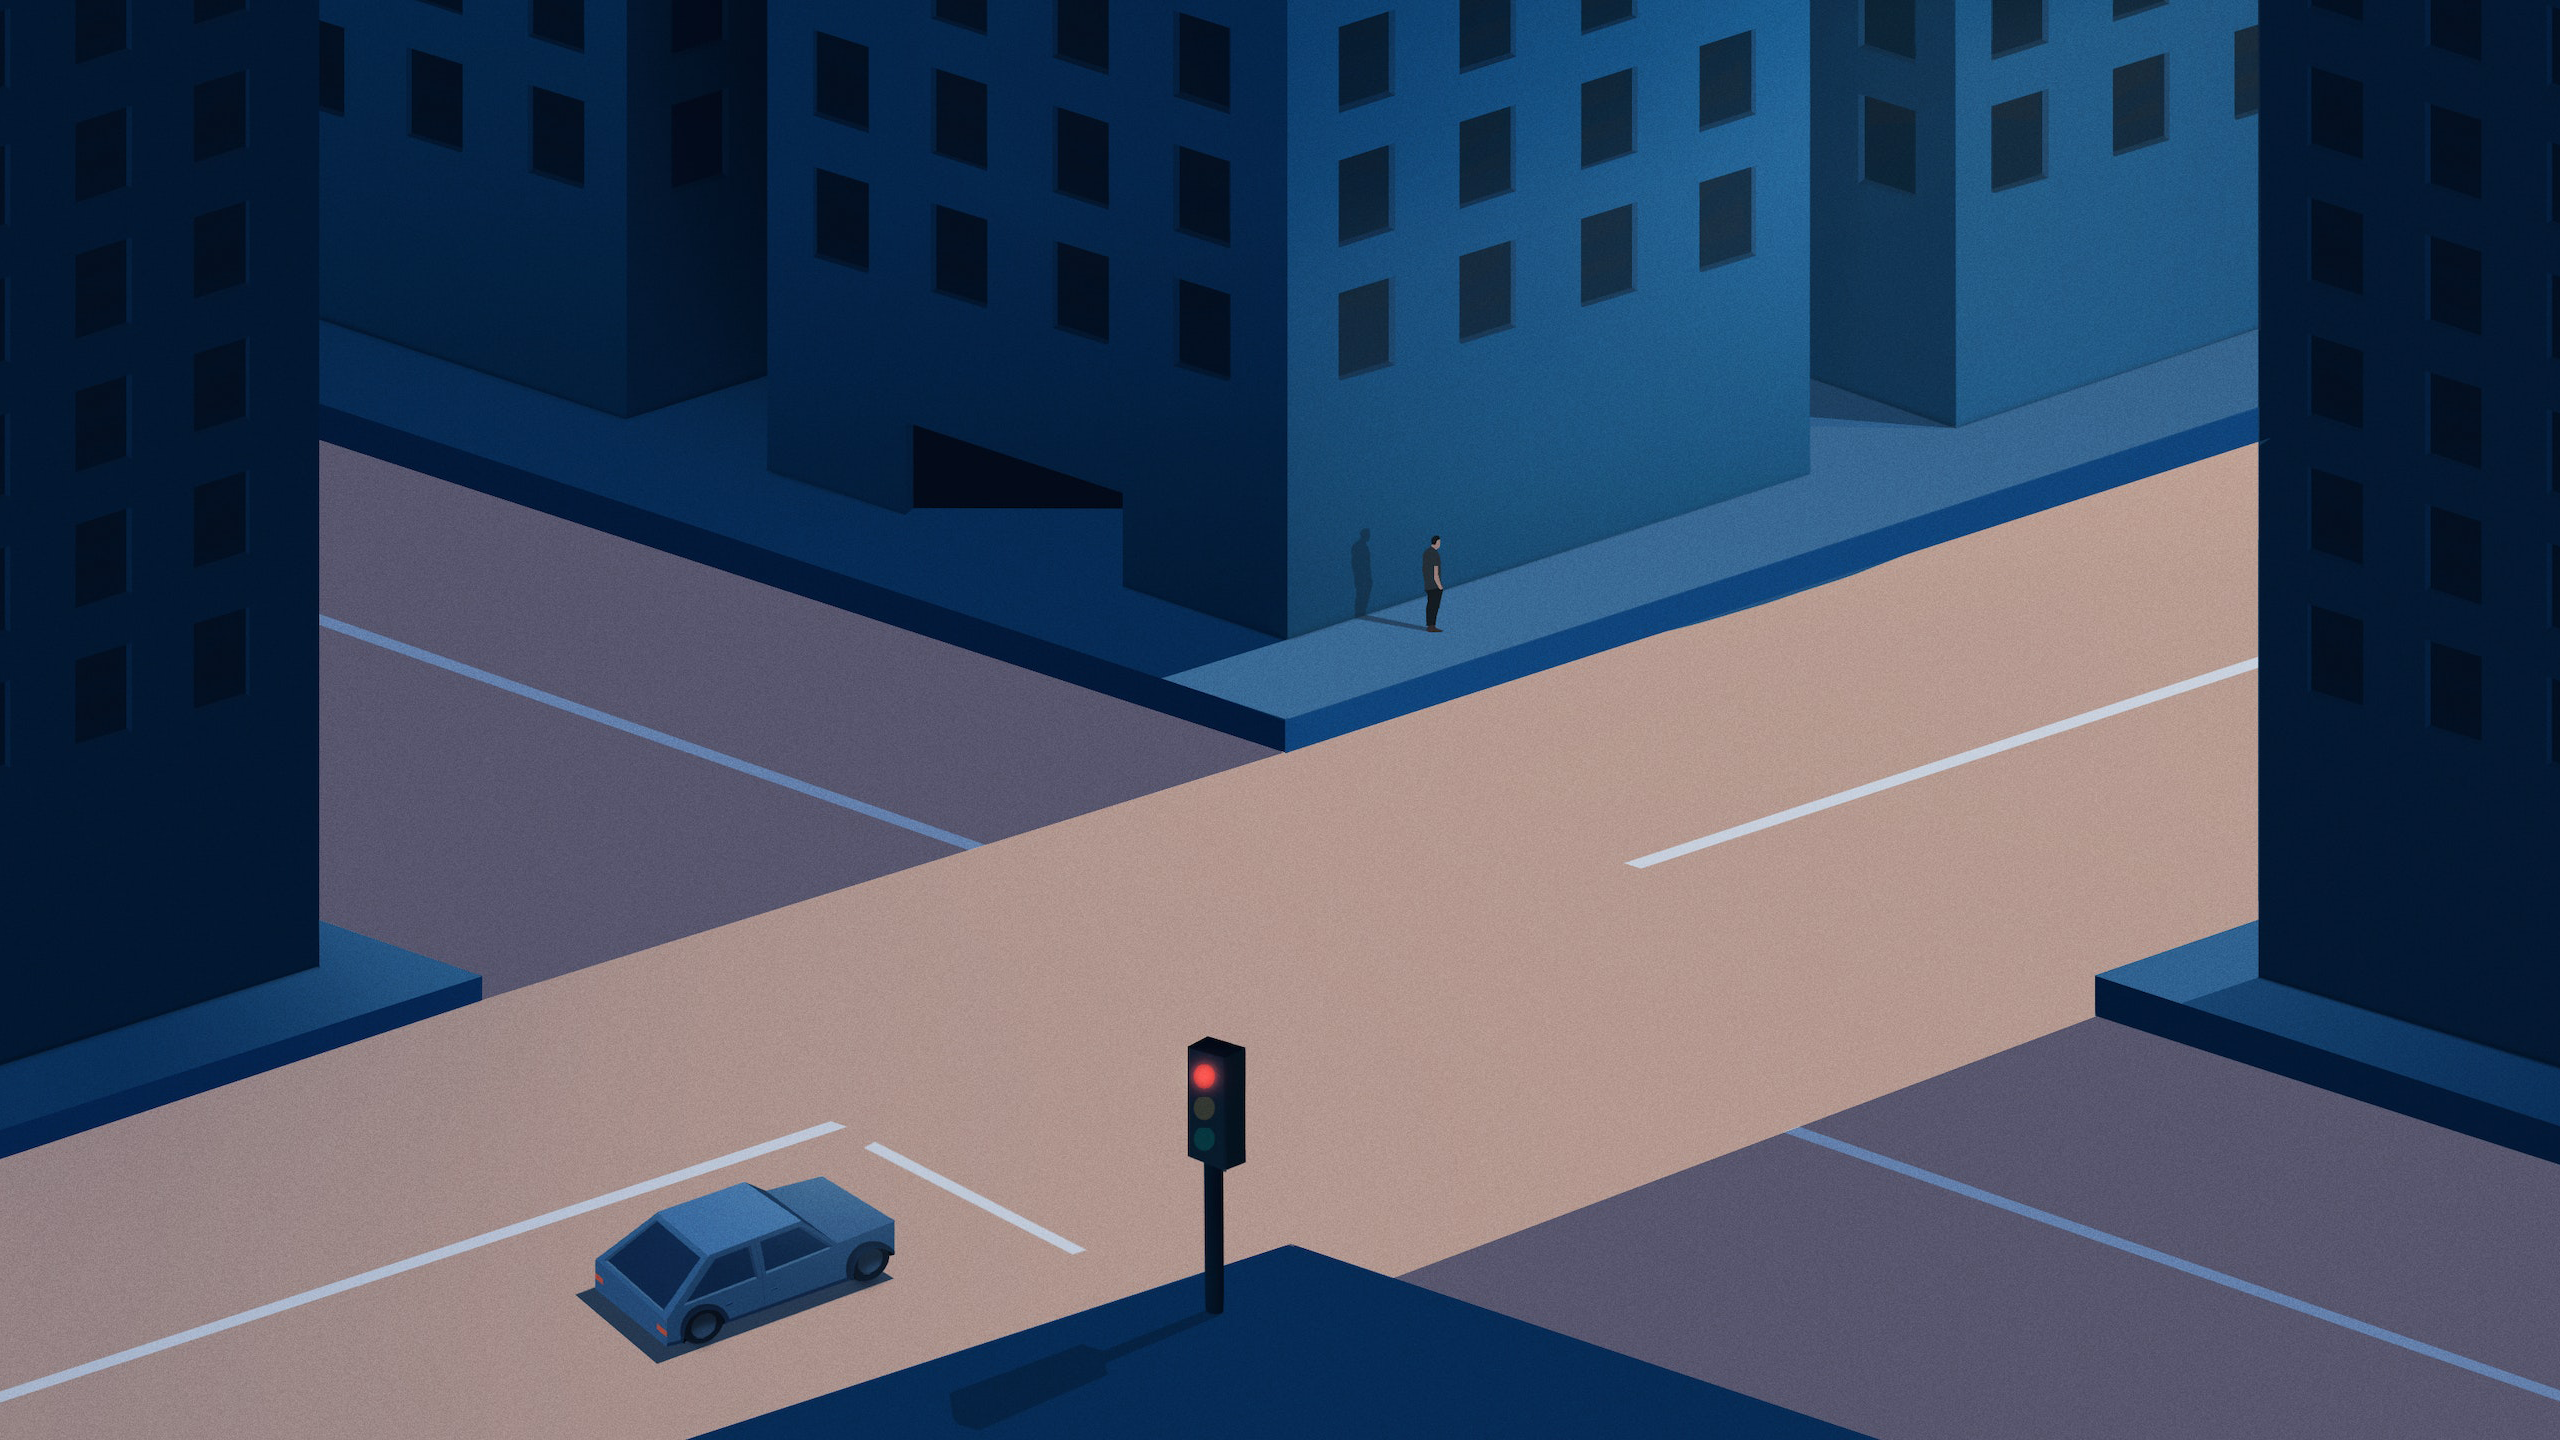 Digital Art Artwork Illustration Minimalism 2K Street Road Sunlight Traffic Lights Building Car Simp 2560x1440